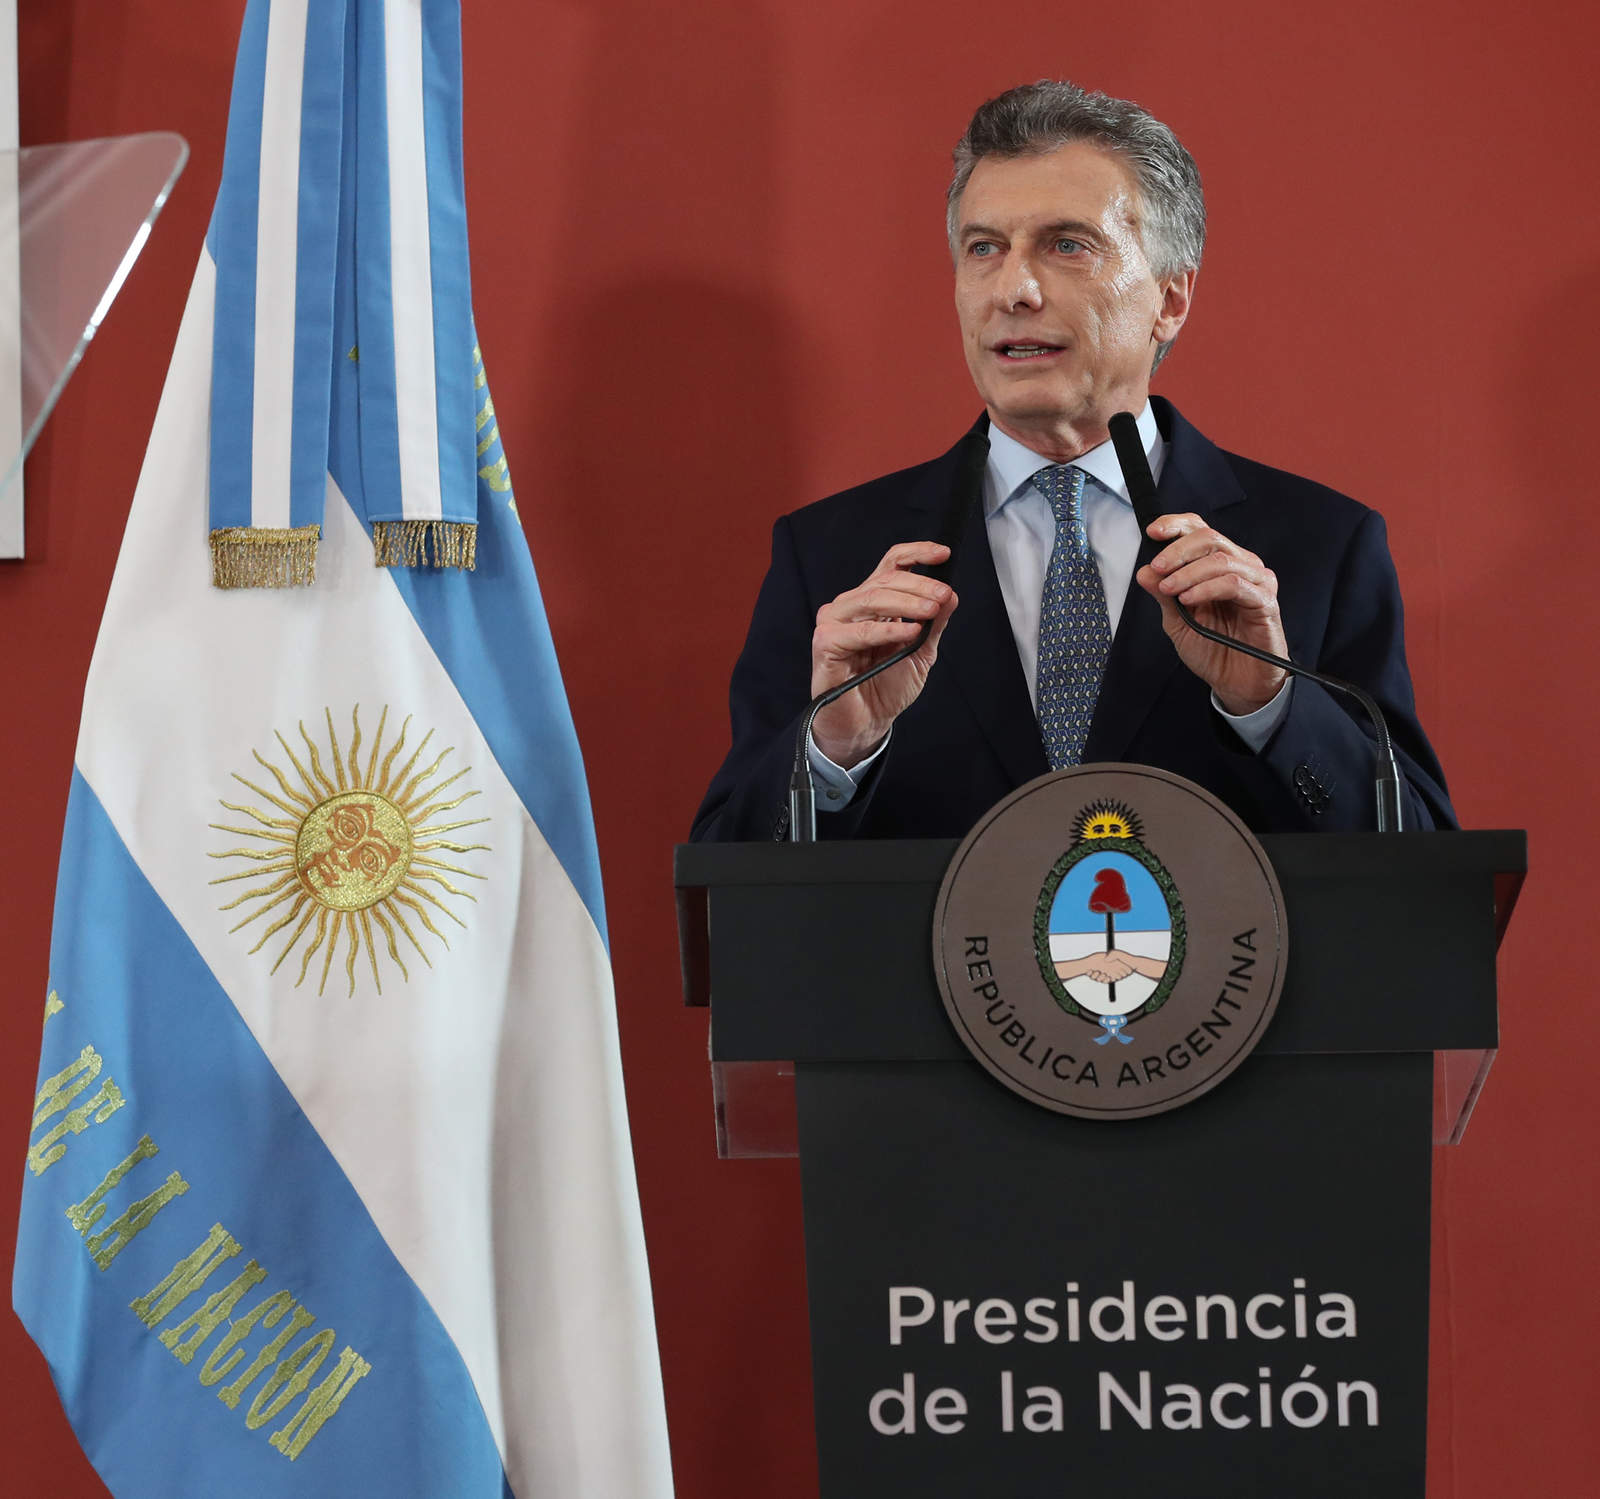 El Fondo Monetario Internacional (FMI) alcanzó hoy un acuerdo con Argentina sobre la segunda revisión del programa de asistencia financiera, que permitirá el desembolso de cerca de 7,600 millones de dólares en diciembre. (ARCHIVO)